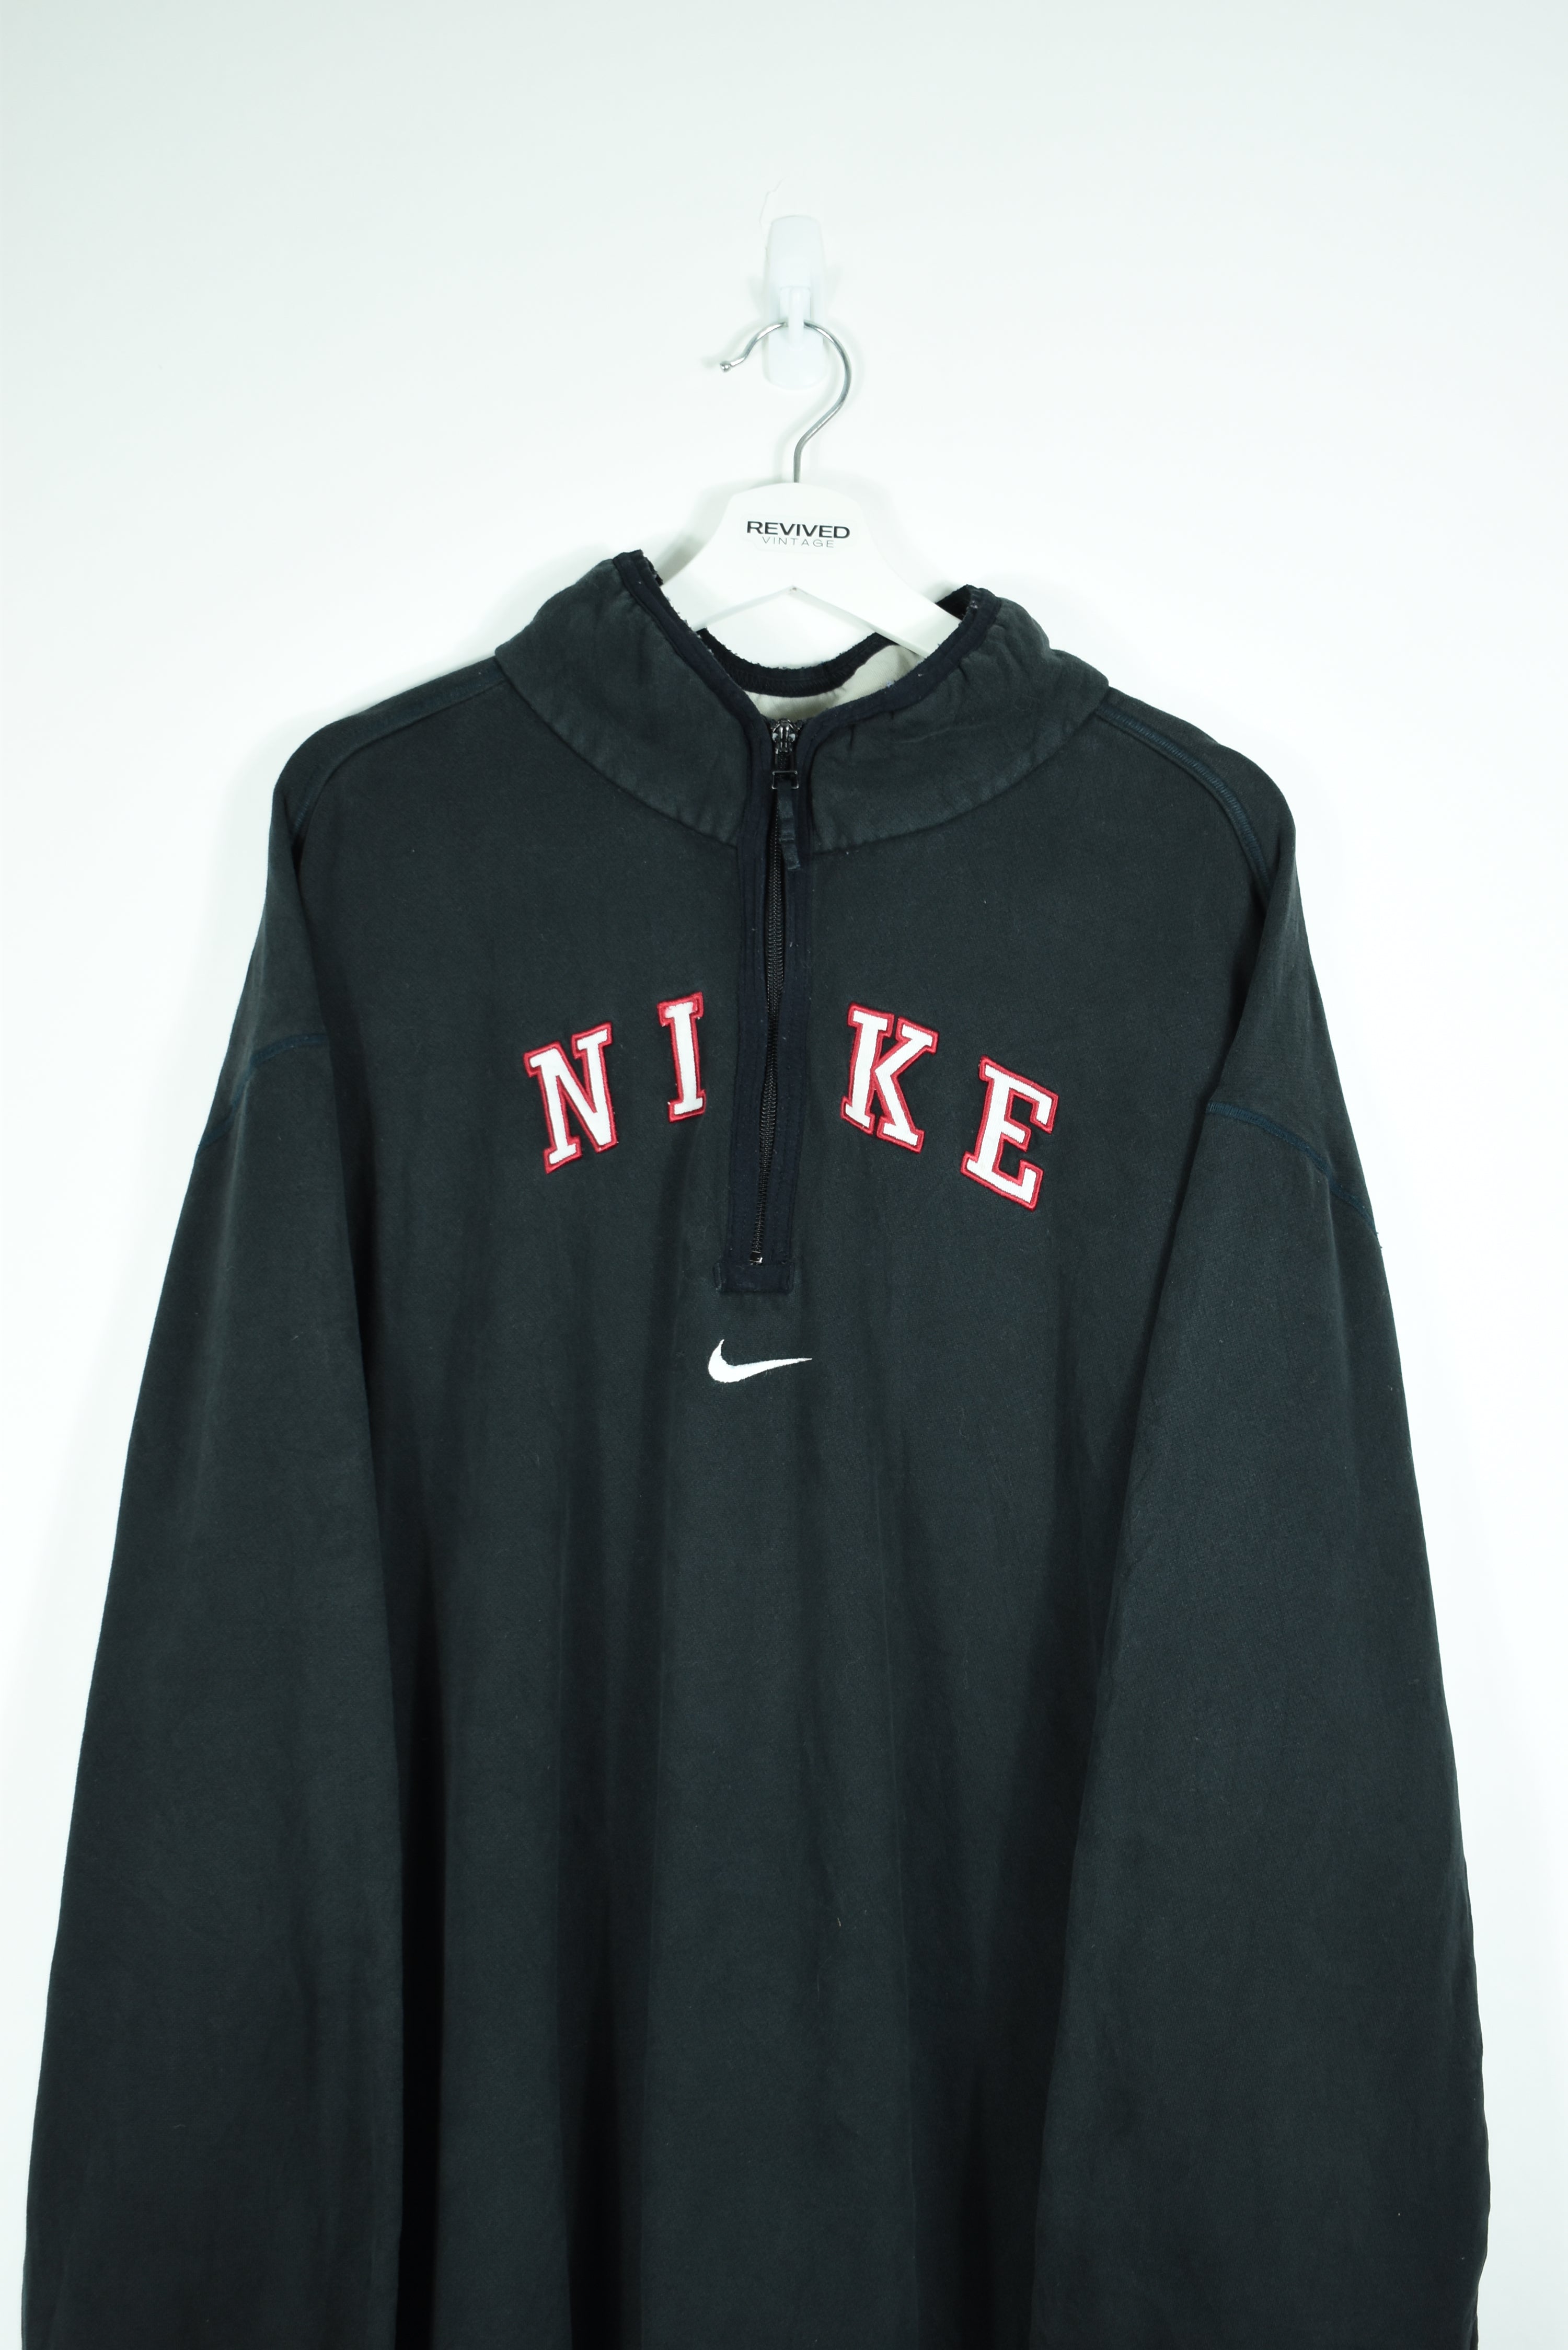 Vintage Nike Embroidery 1/4 Zip Sweatshirt XXL